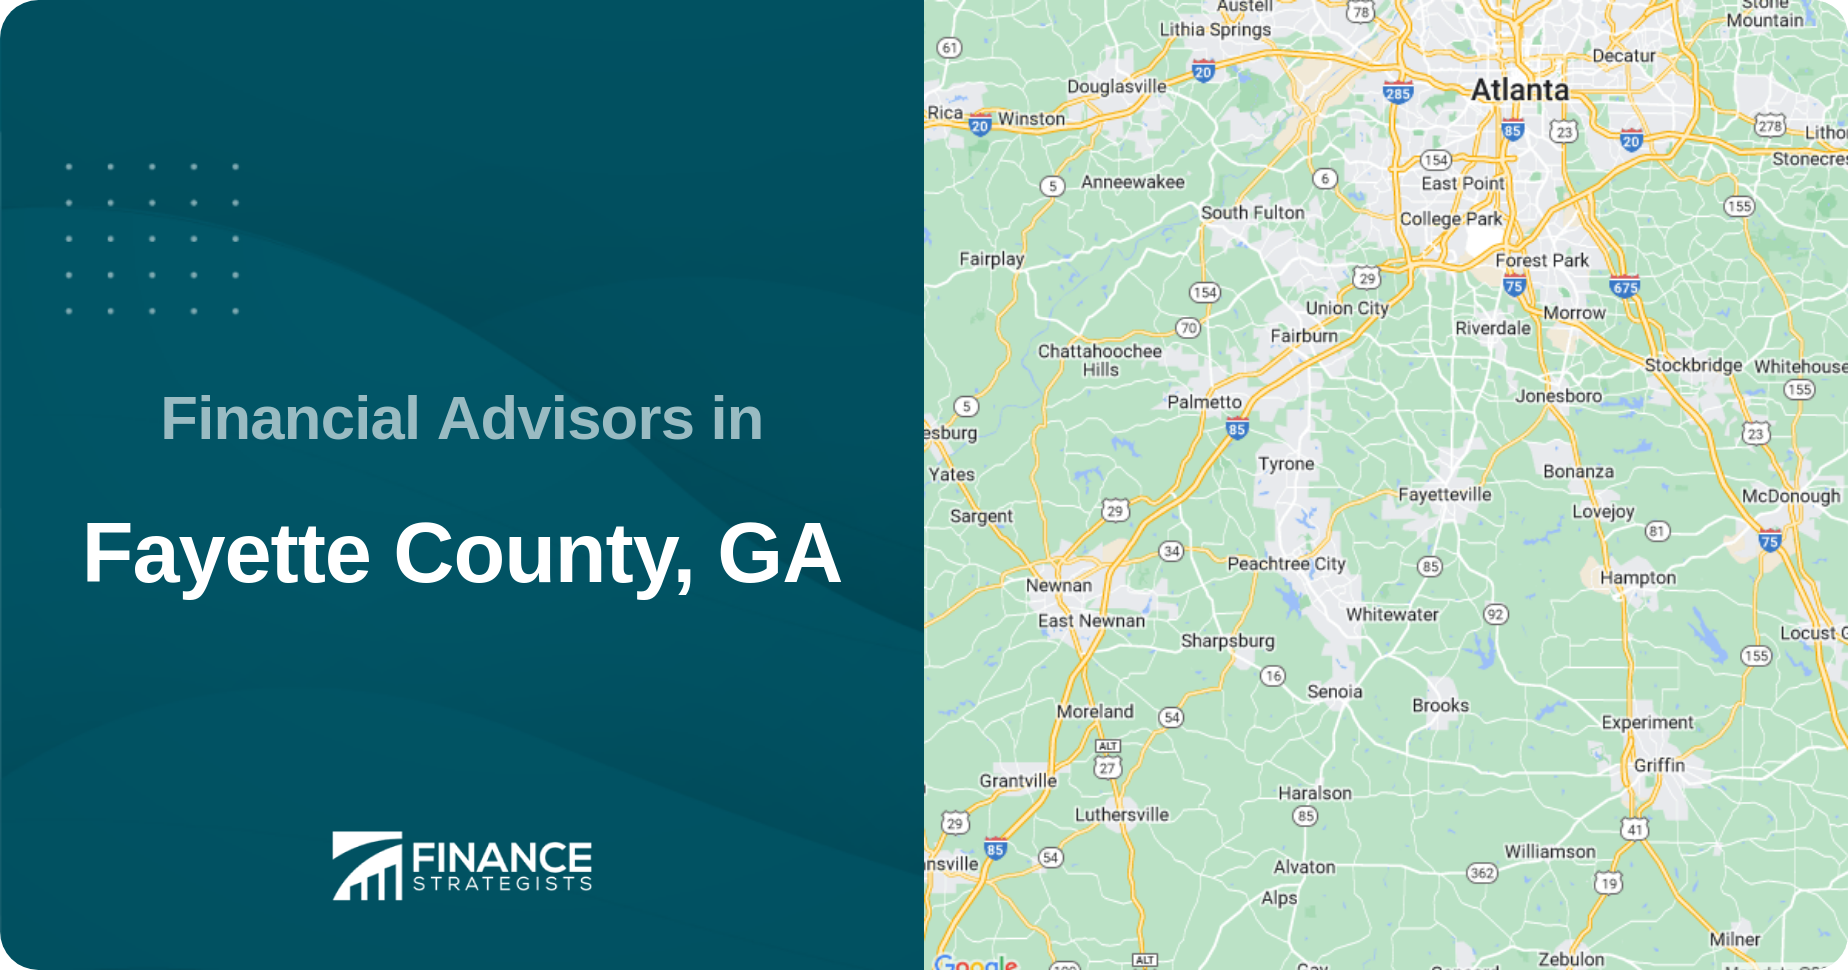 Financial Advisors in Fayette County, GA